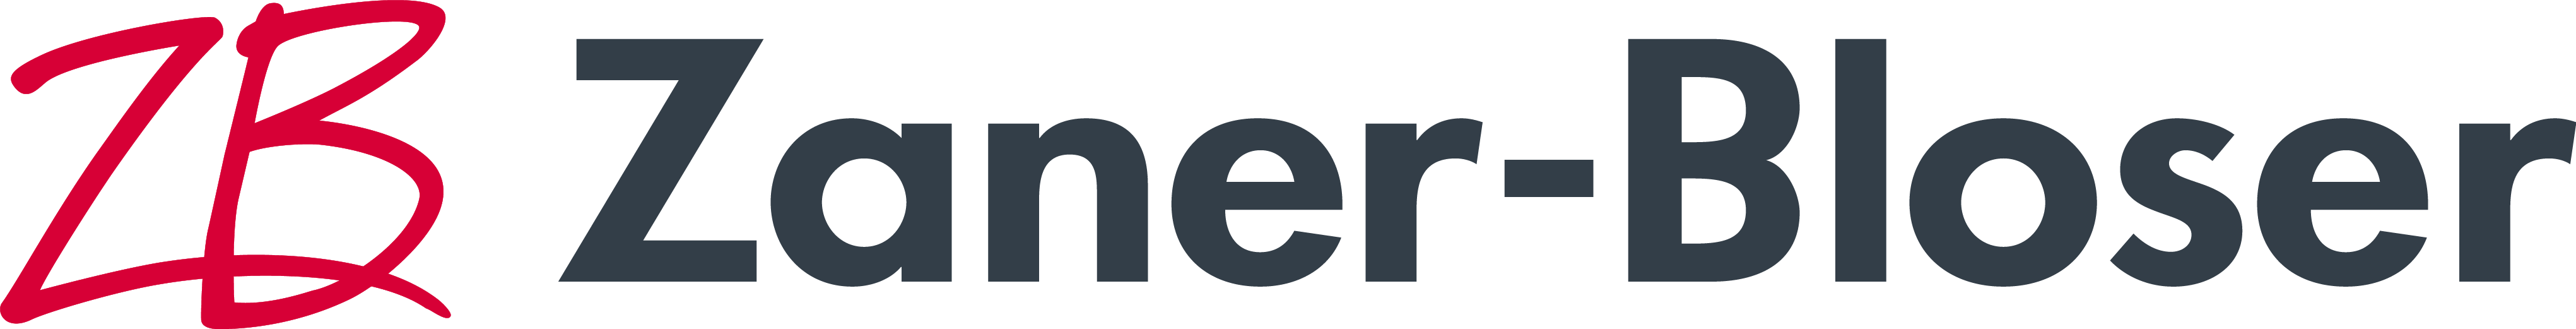 Zaner-Bloser logo